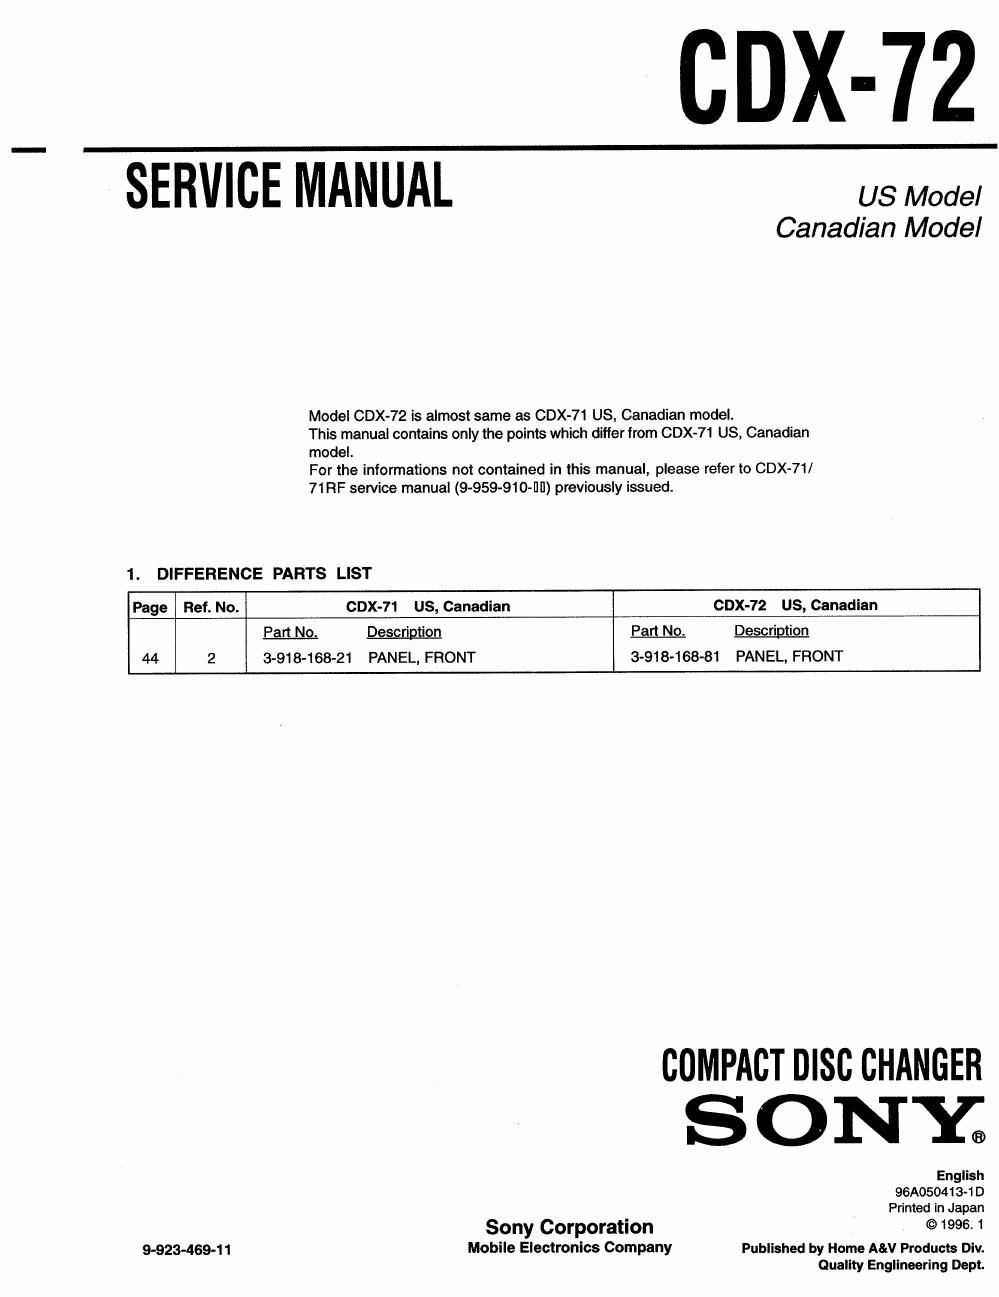 sony cdx 72 service manual